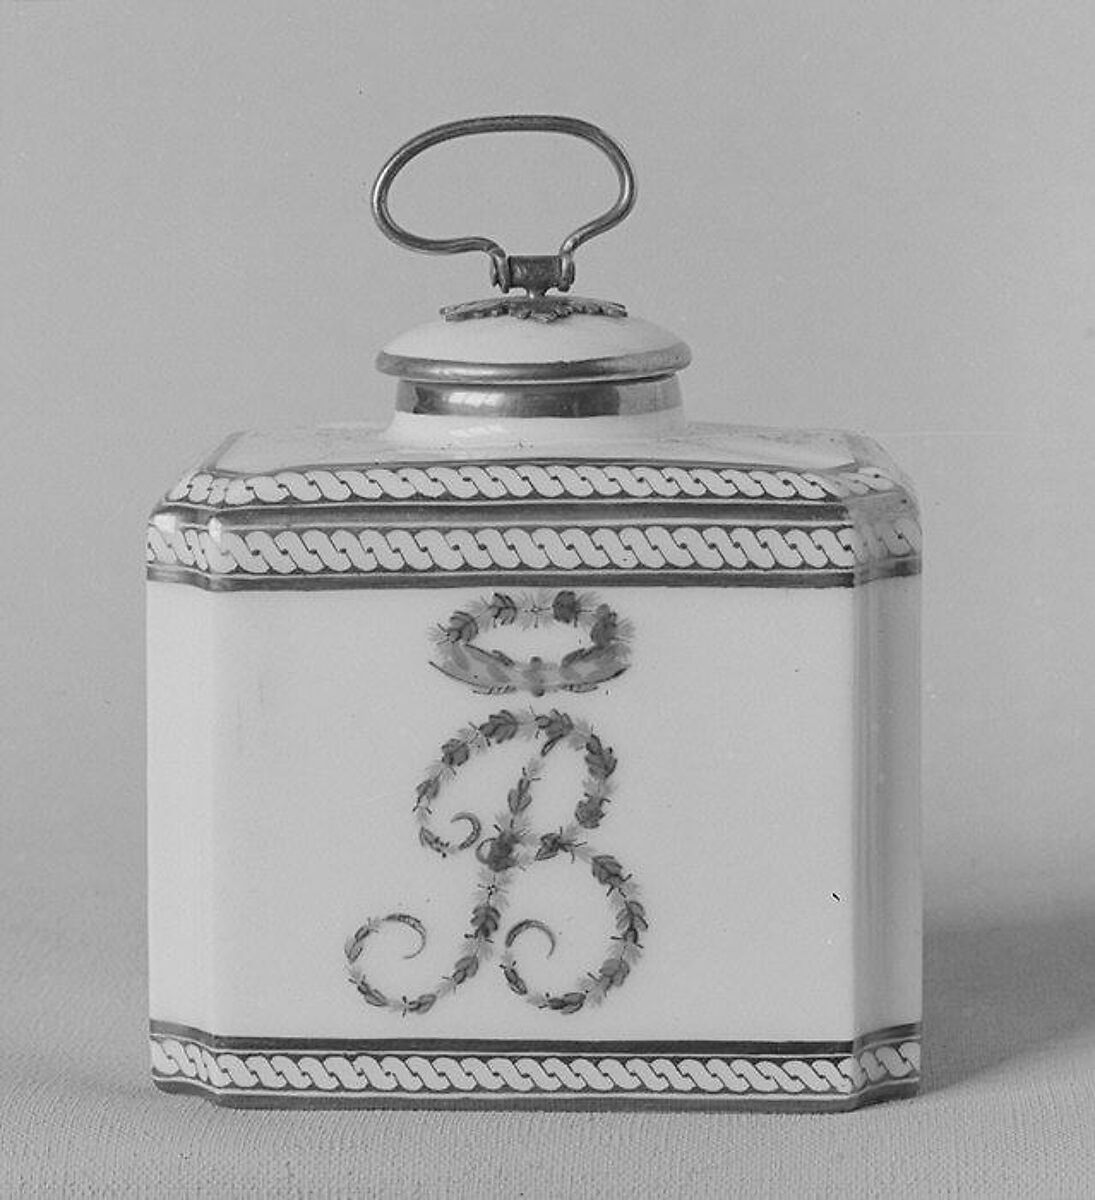 Tea caddy (part of a traveling tea service), Dihl et Guérhard (French, 1781–ca. 1824) (Manufacture de Monsieur Le Duc d’Angoulême, until 1789), Hard-paste porcelain, French, Paris 